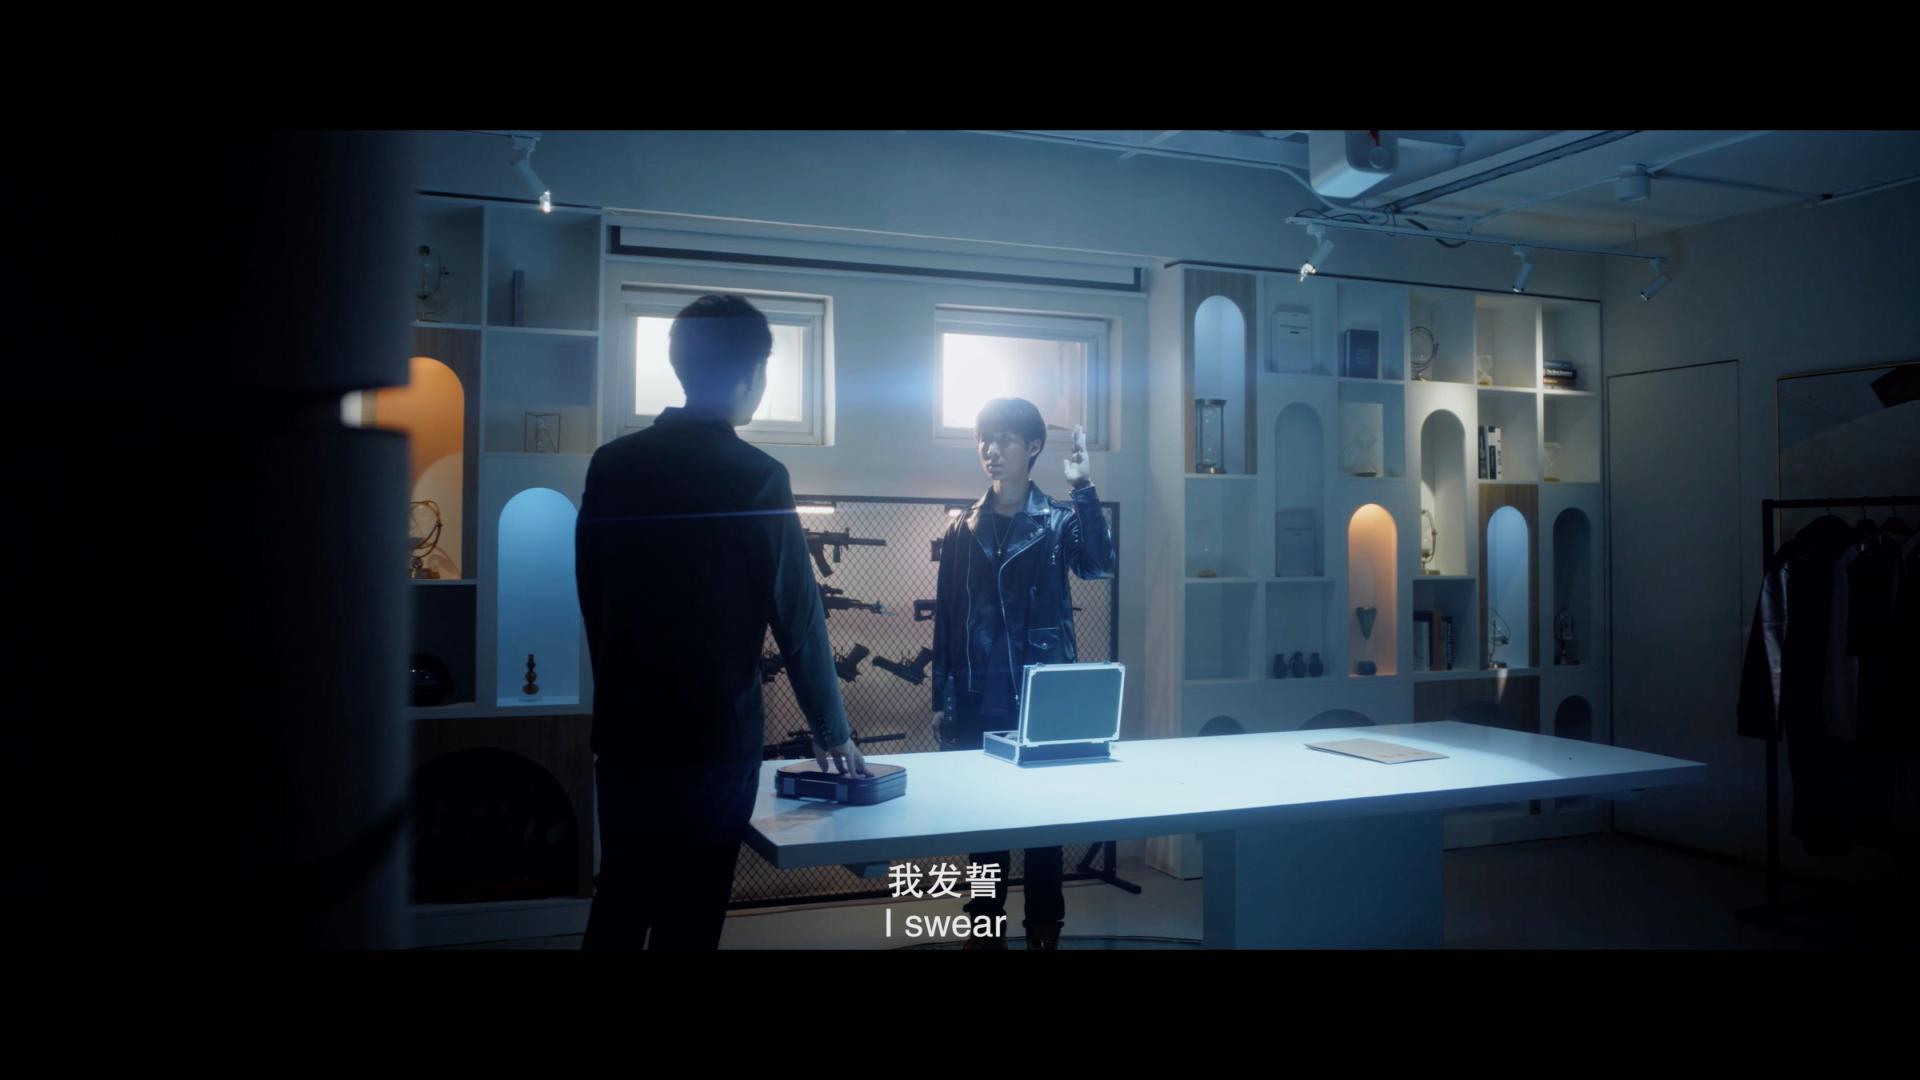 中国传媒大学 18导演系 类型片创作短片《没有名字的人》